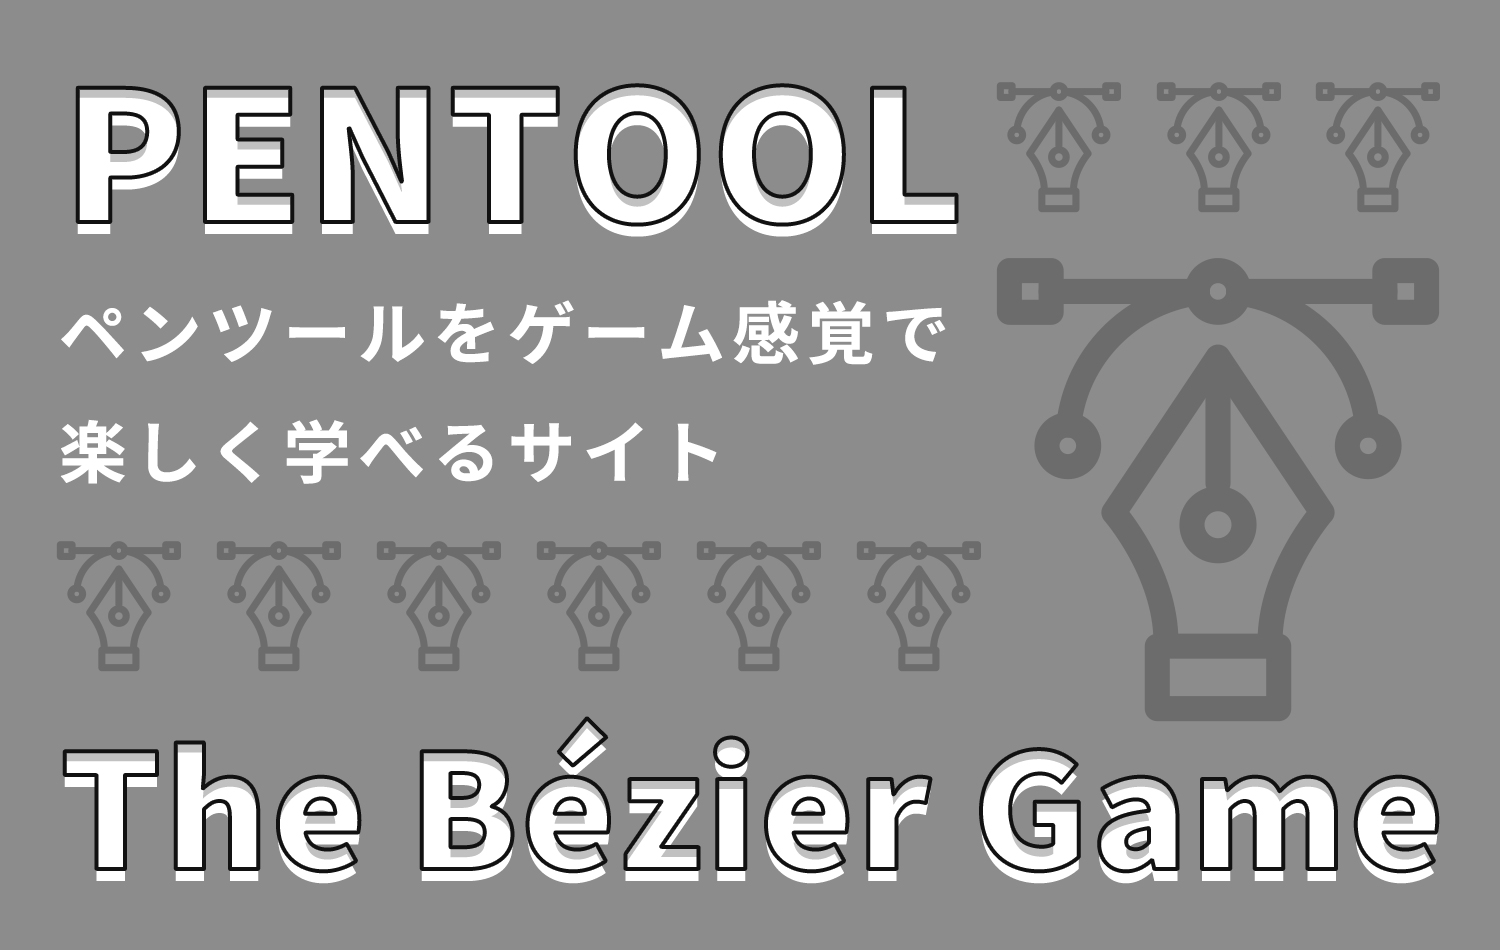 ゲーム感覚で楽しくペンツールの練習ができる「The Bézier Game」